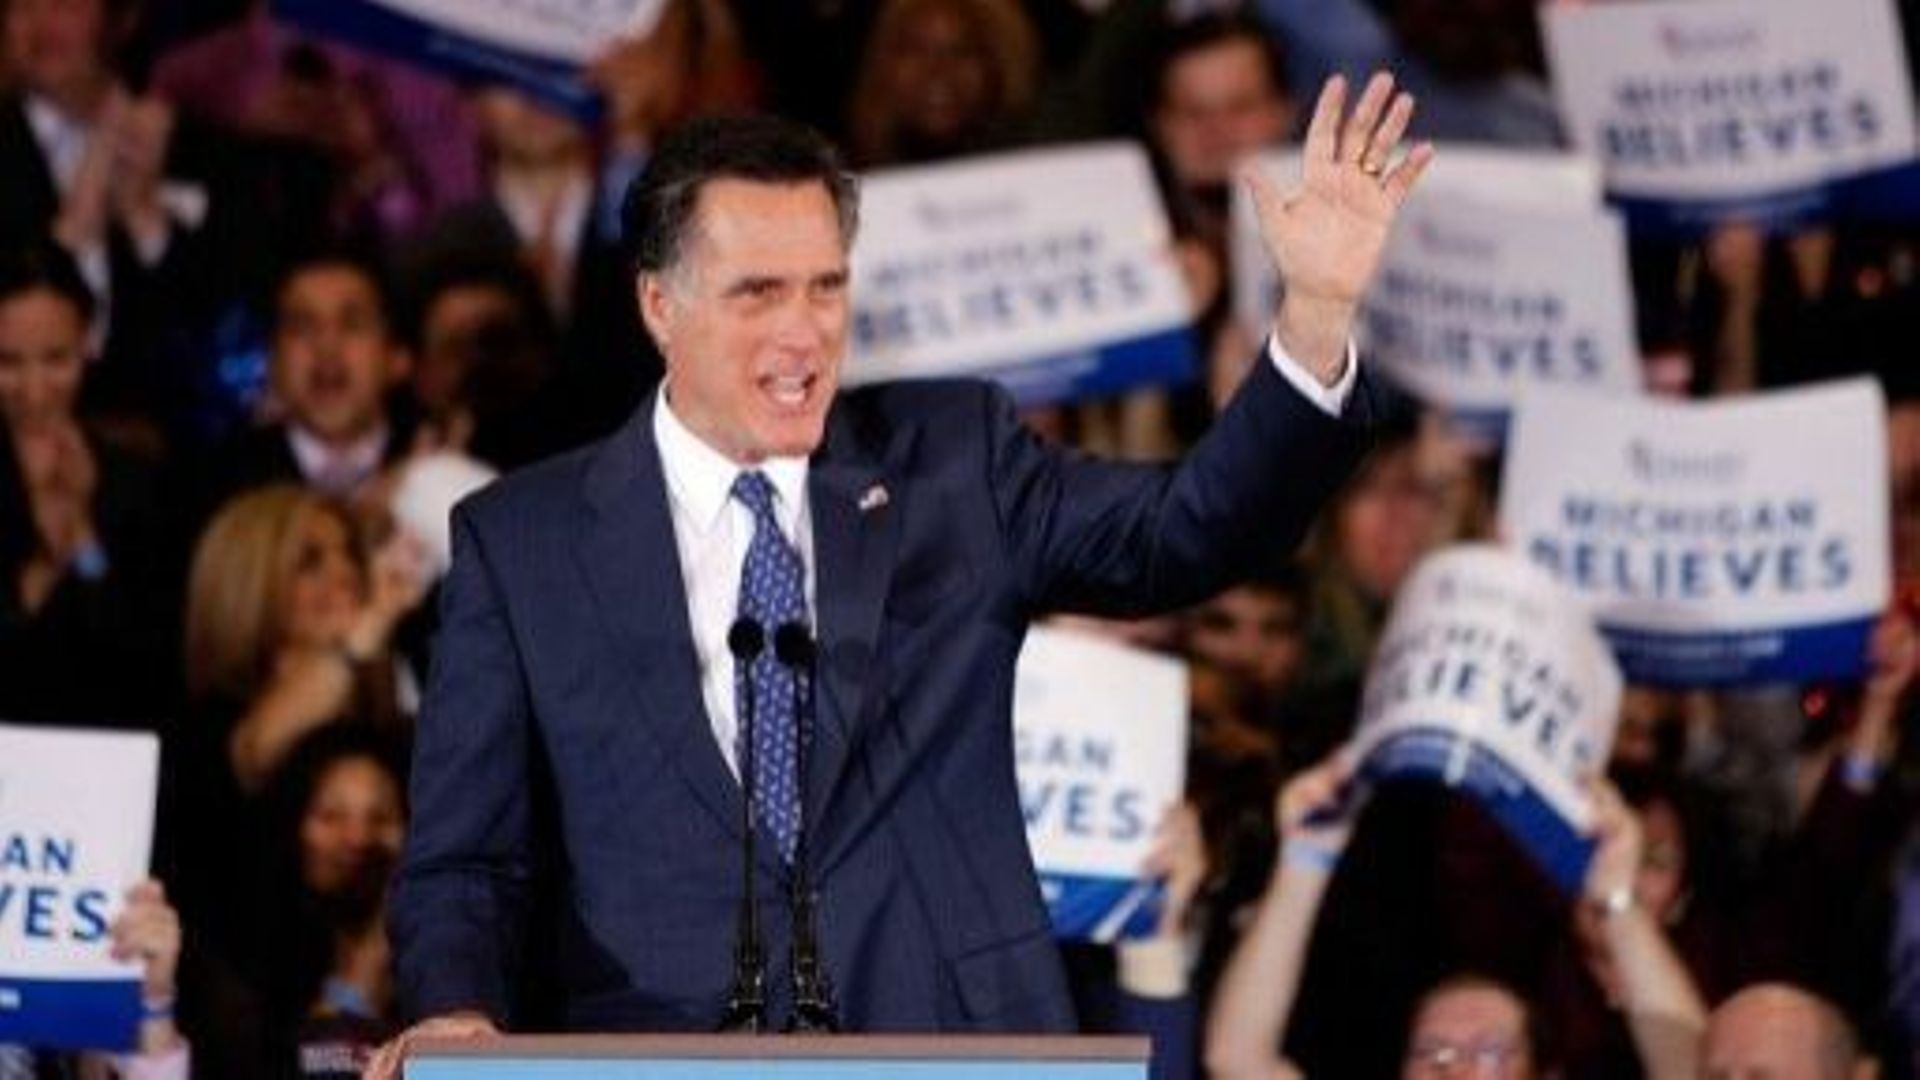 Mitt Romney le 28 février 2012 à Novi dans le Michigan